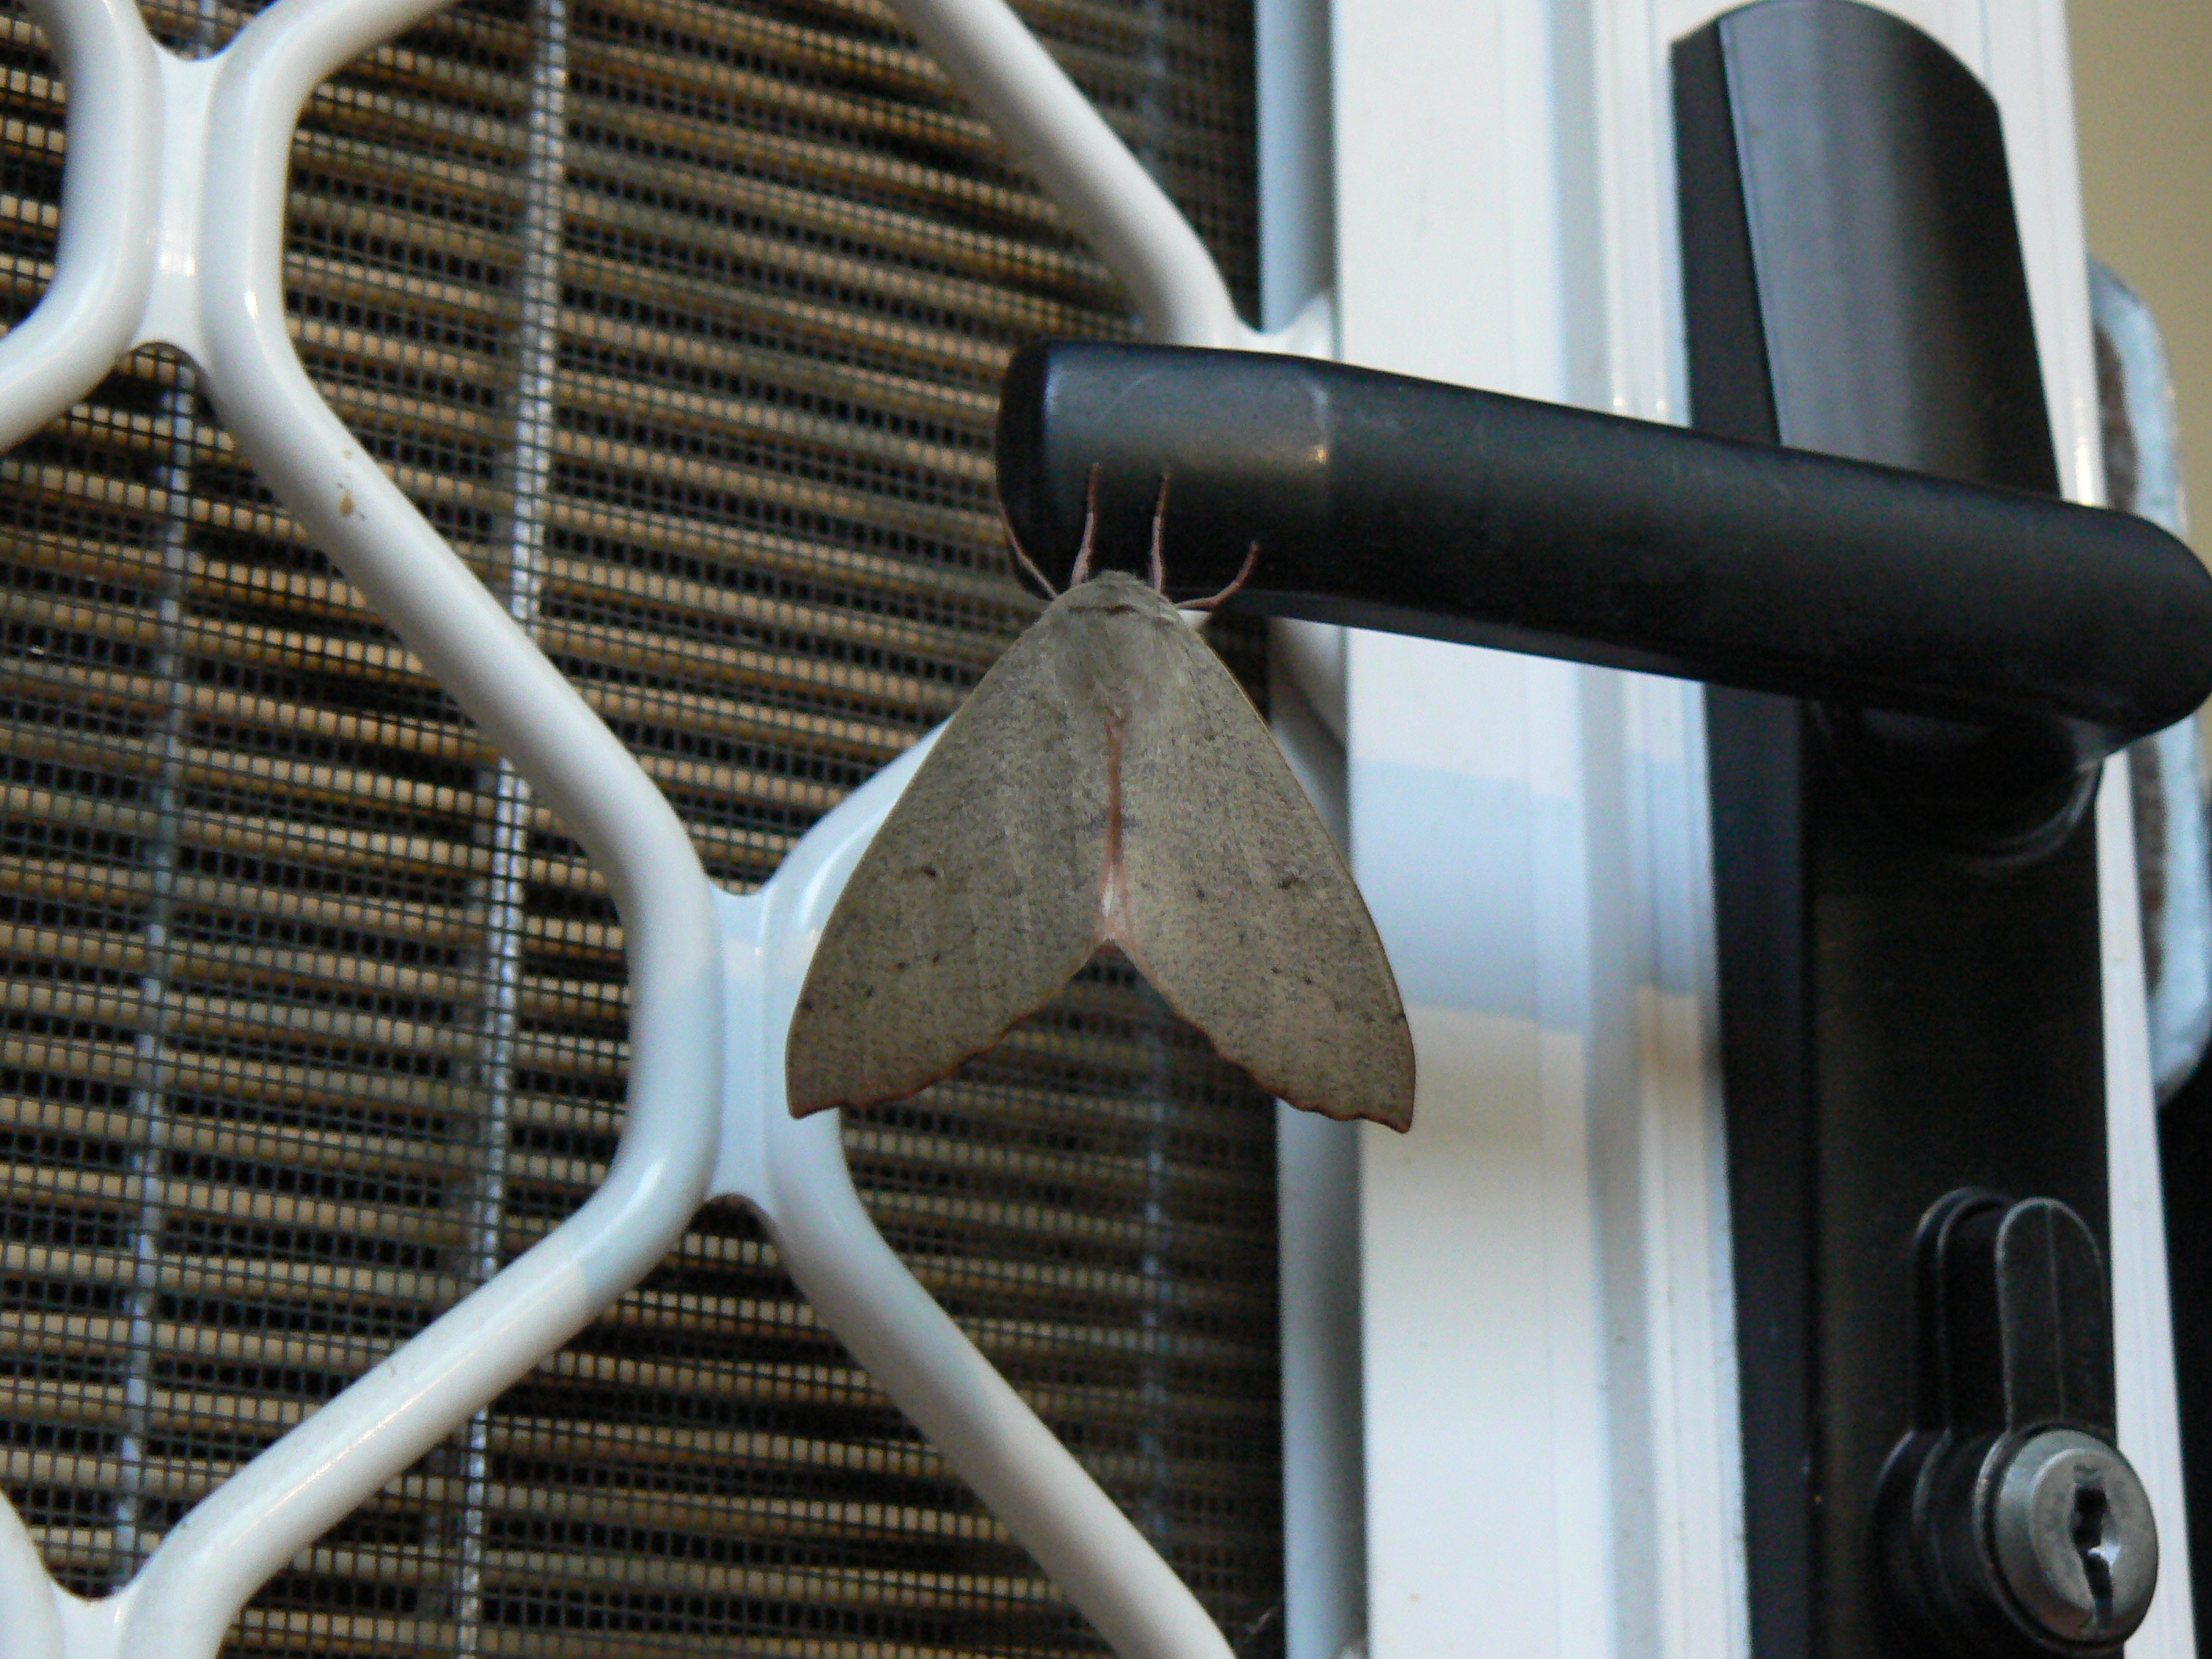 It's a big Canberra Door Moth